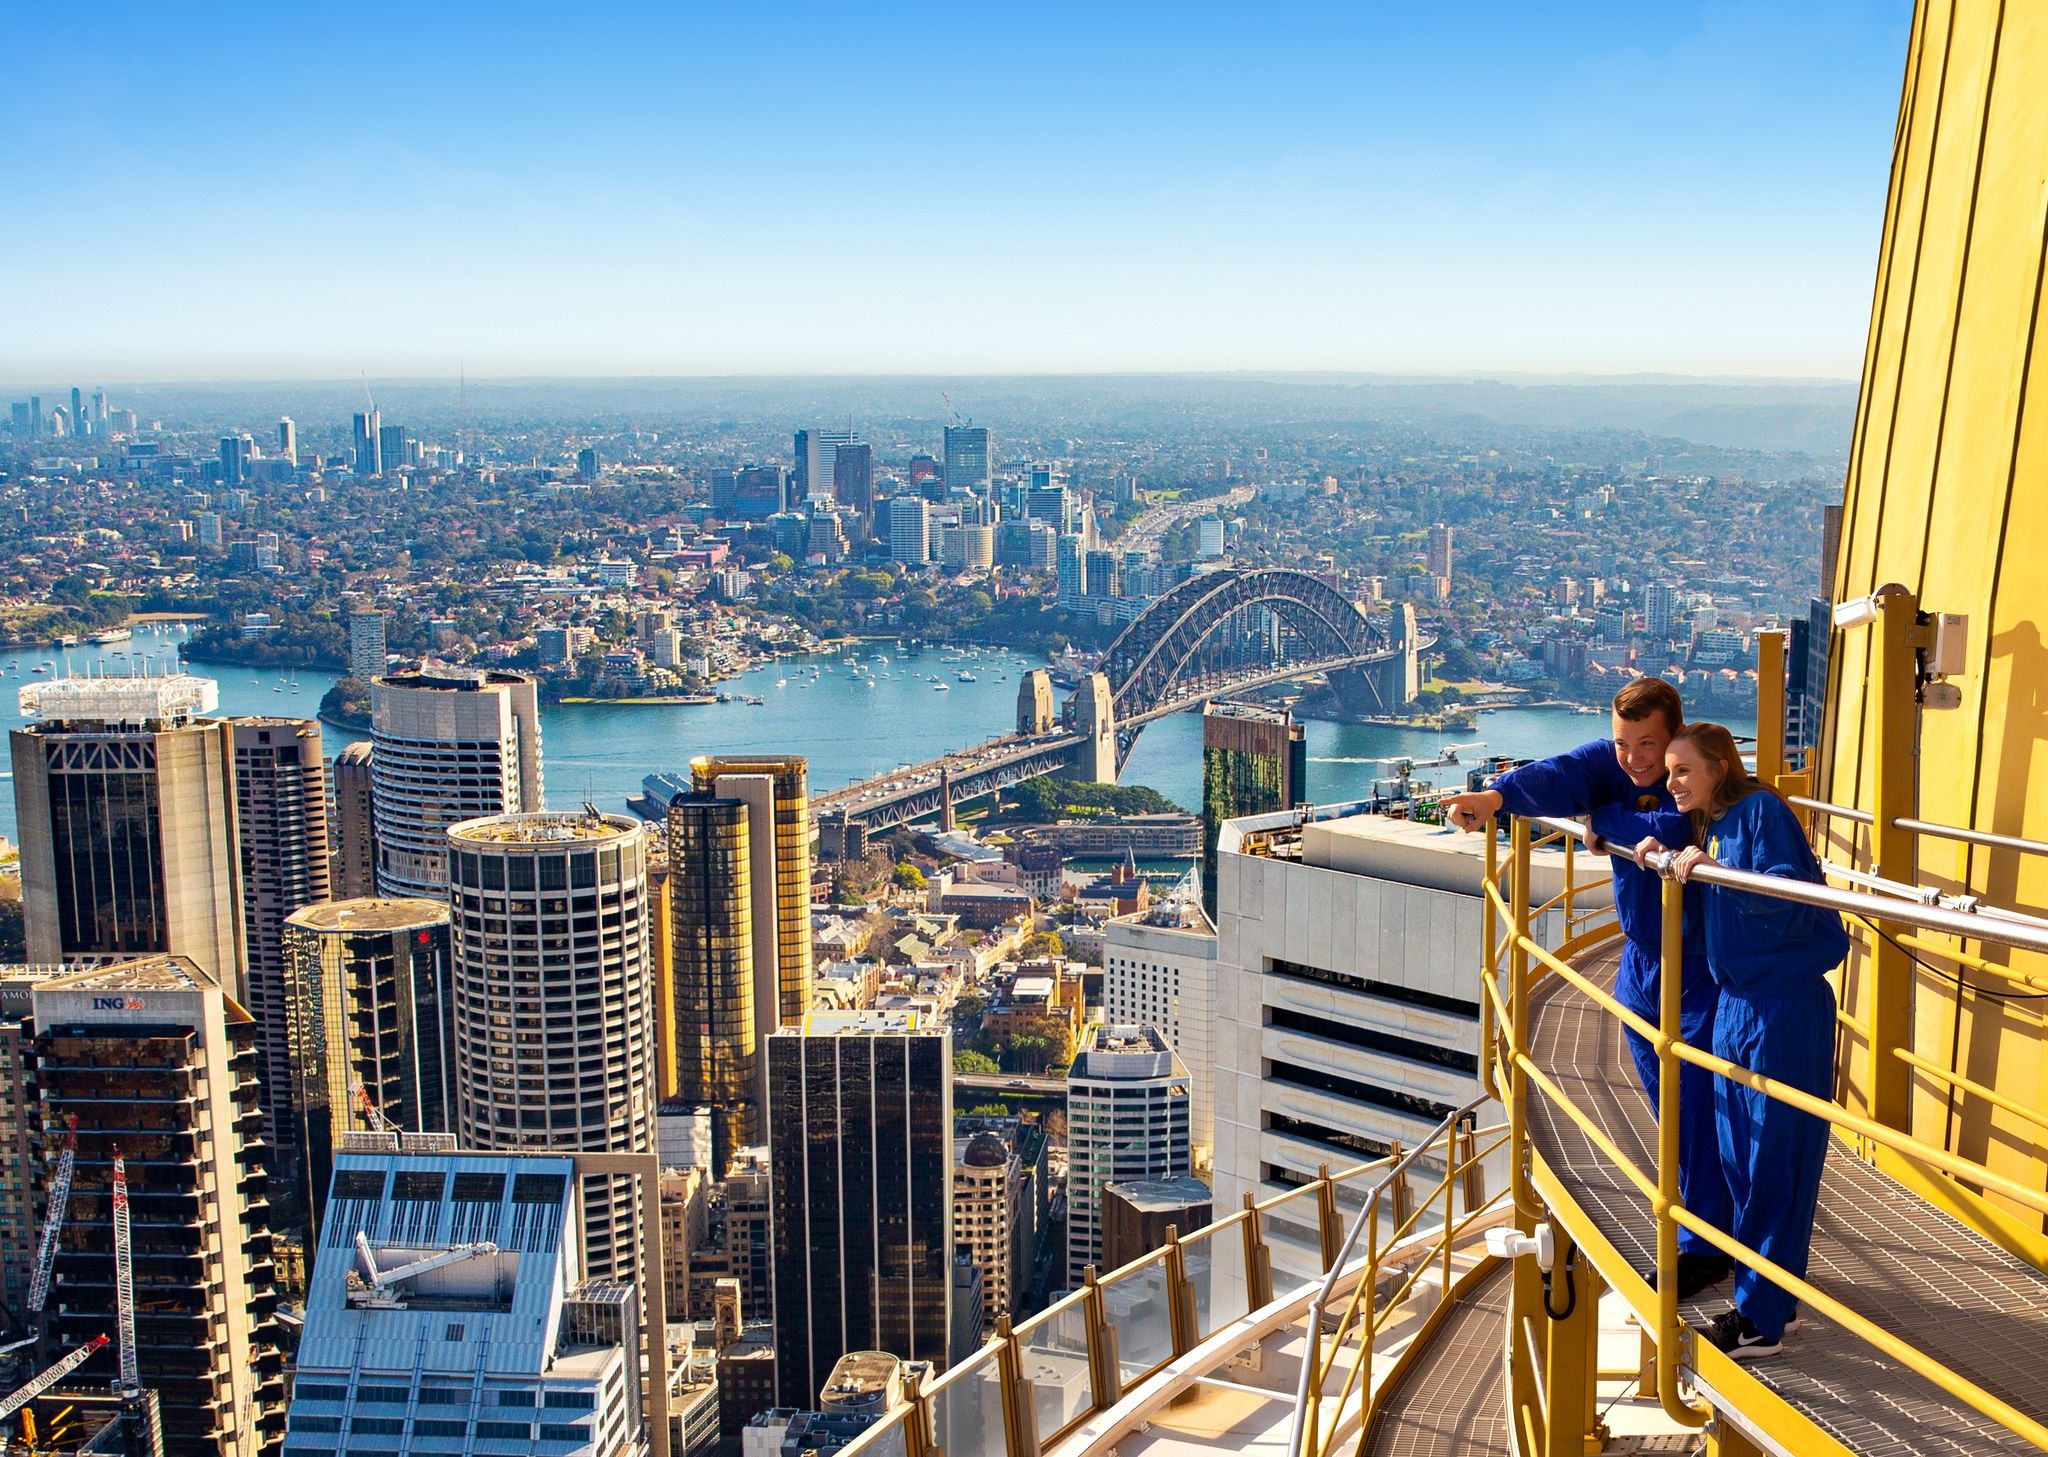 Sydney Tower Eye SKYWALK (1)